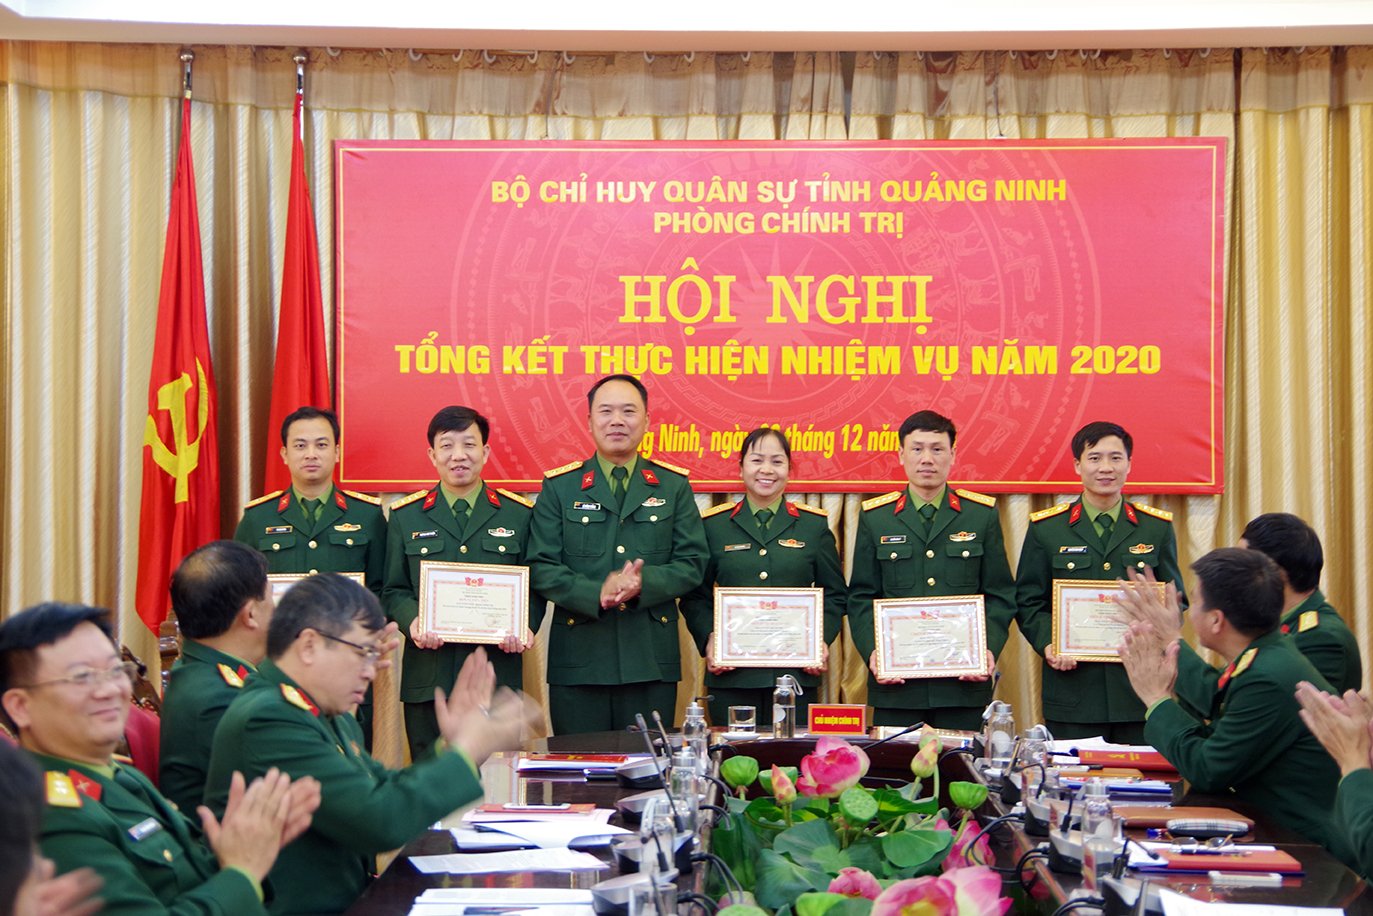 Thiếu tá Vũ Thị Chuyền, Ban Chính trị, Bộ CHQS được khen thưởng danh hiệu chiến sĩ thi đua cấp cơ sở.